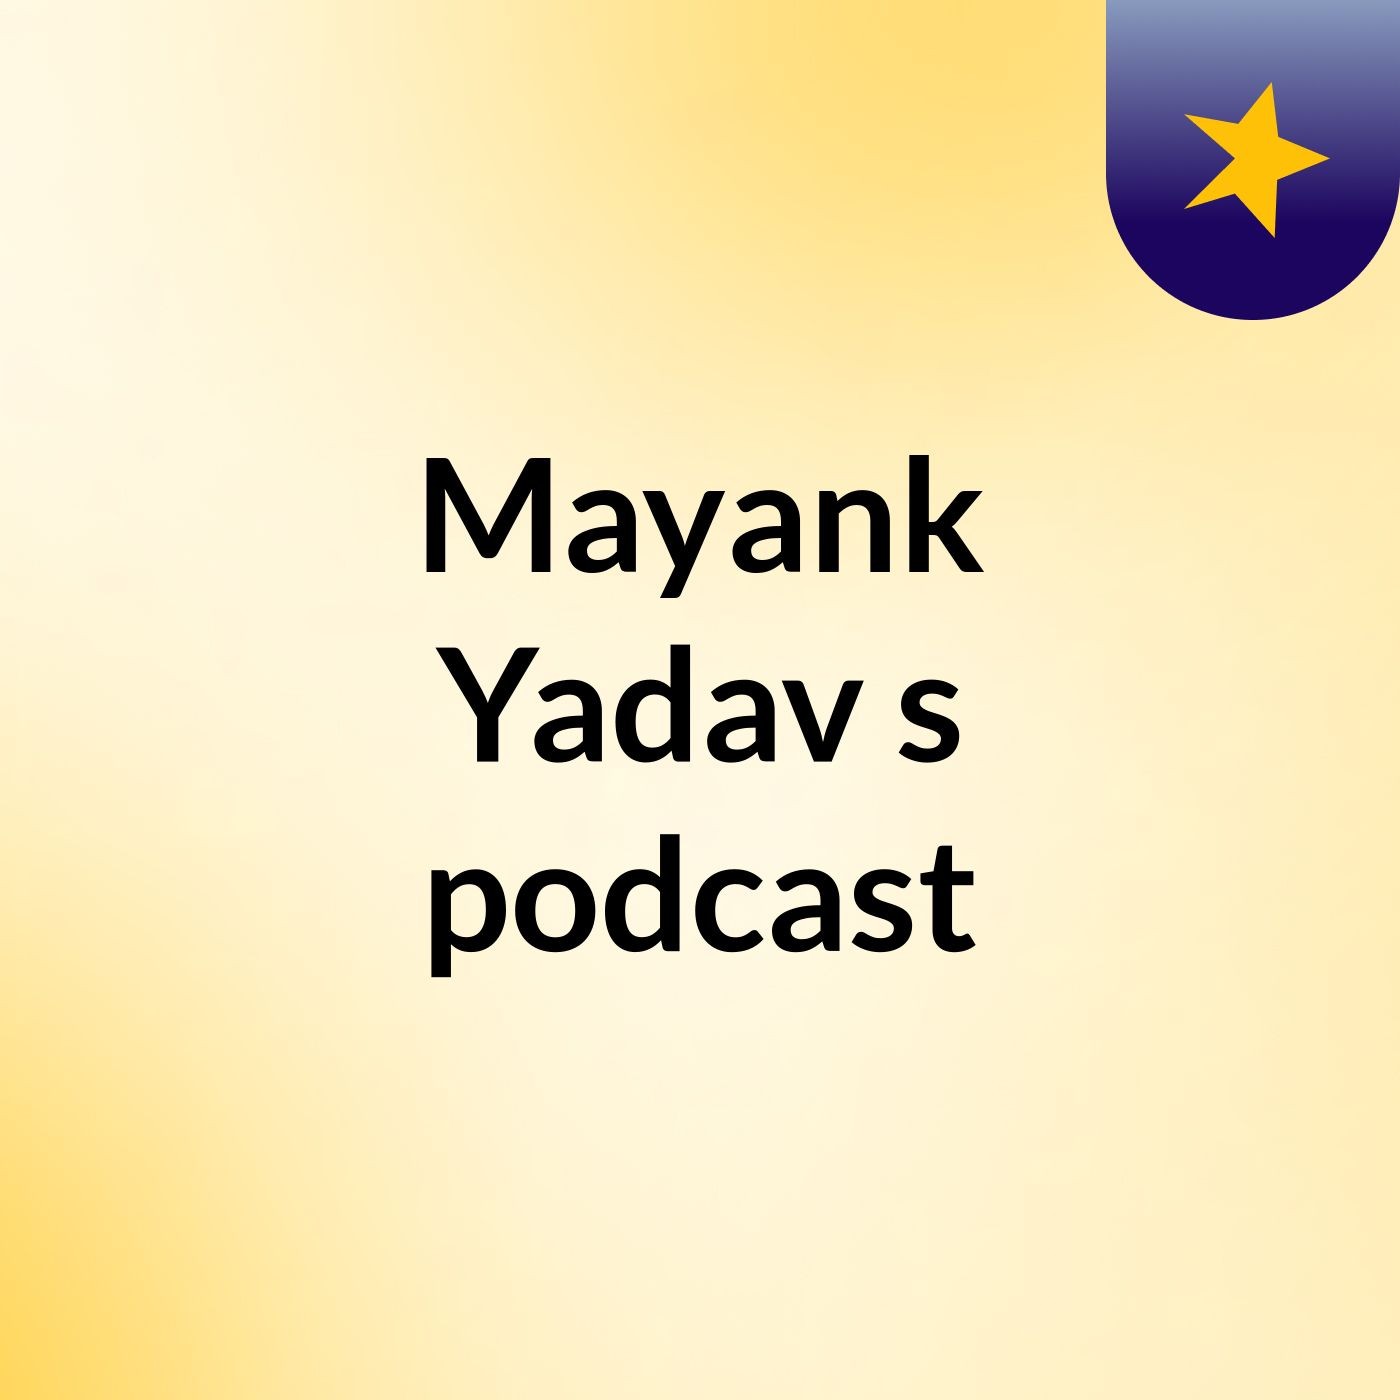 Mayank Yadav's podcast